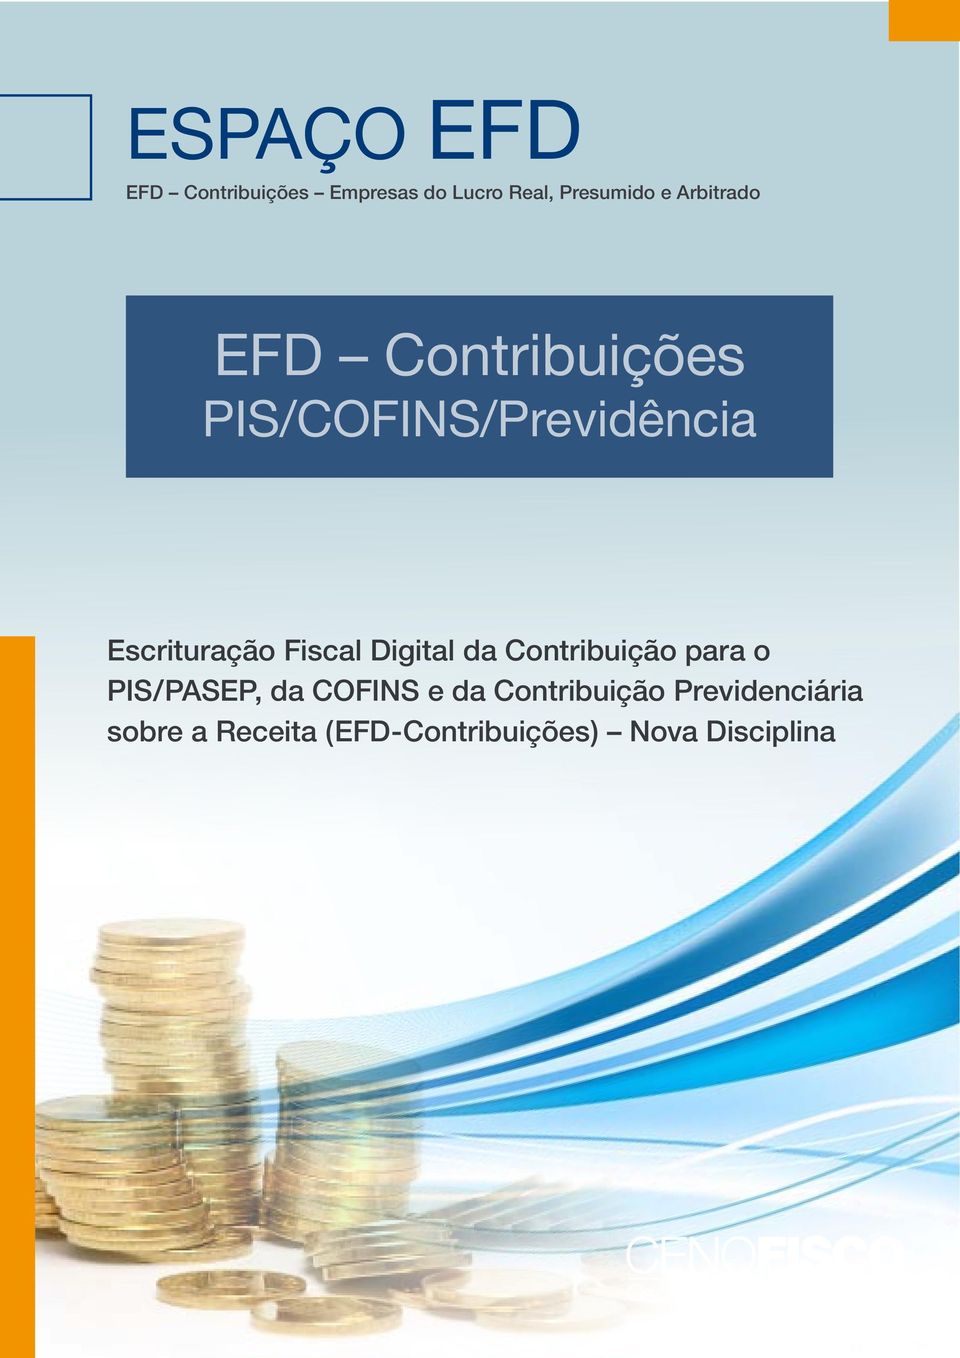 Fiscal Digital da Contribuição para o PIS/PASEP, da COFINS e da